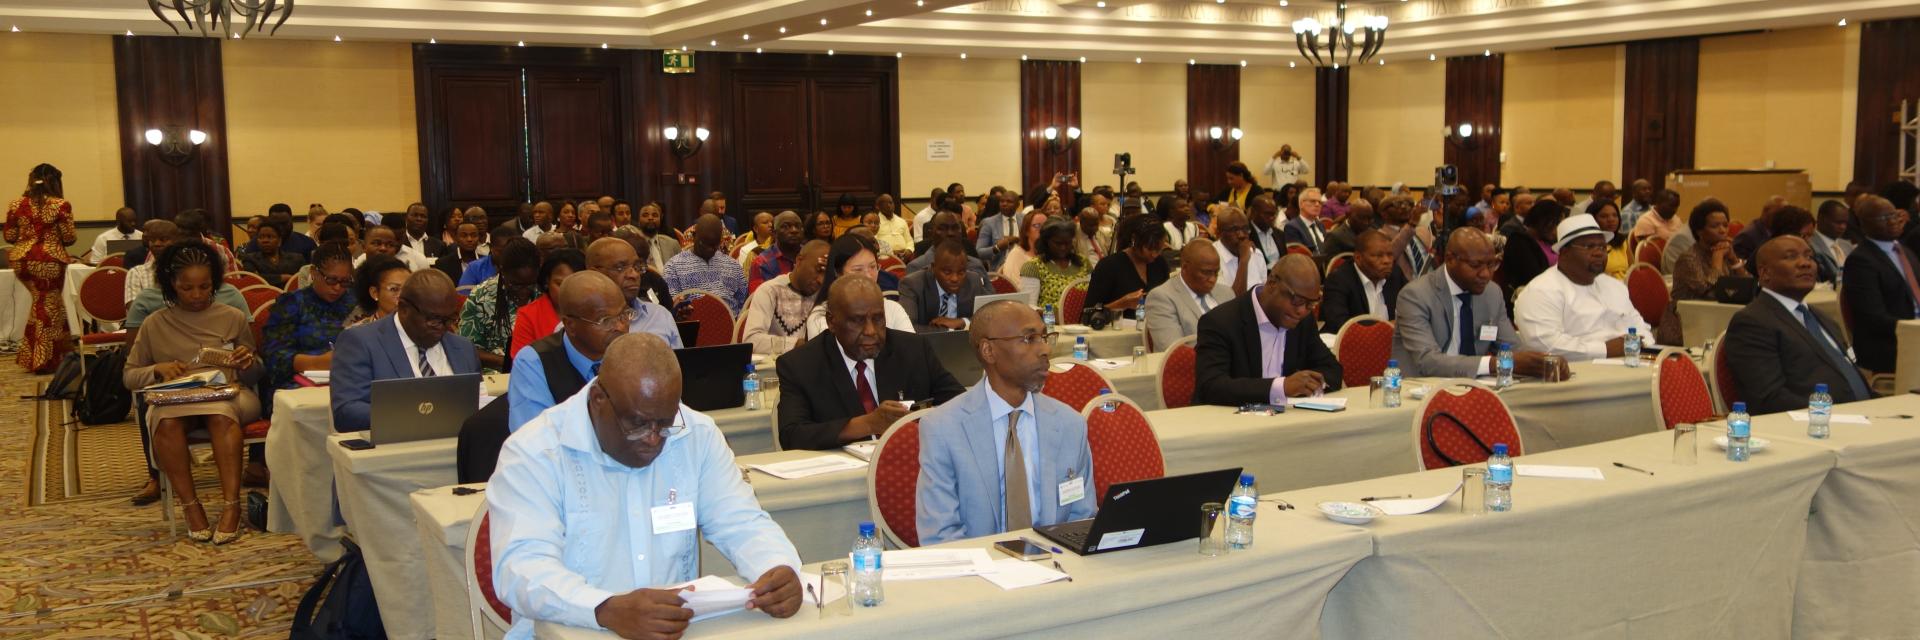 La dixième édition du CCDA axée sur les solutions s’ouvre à Windhoek